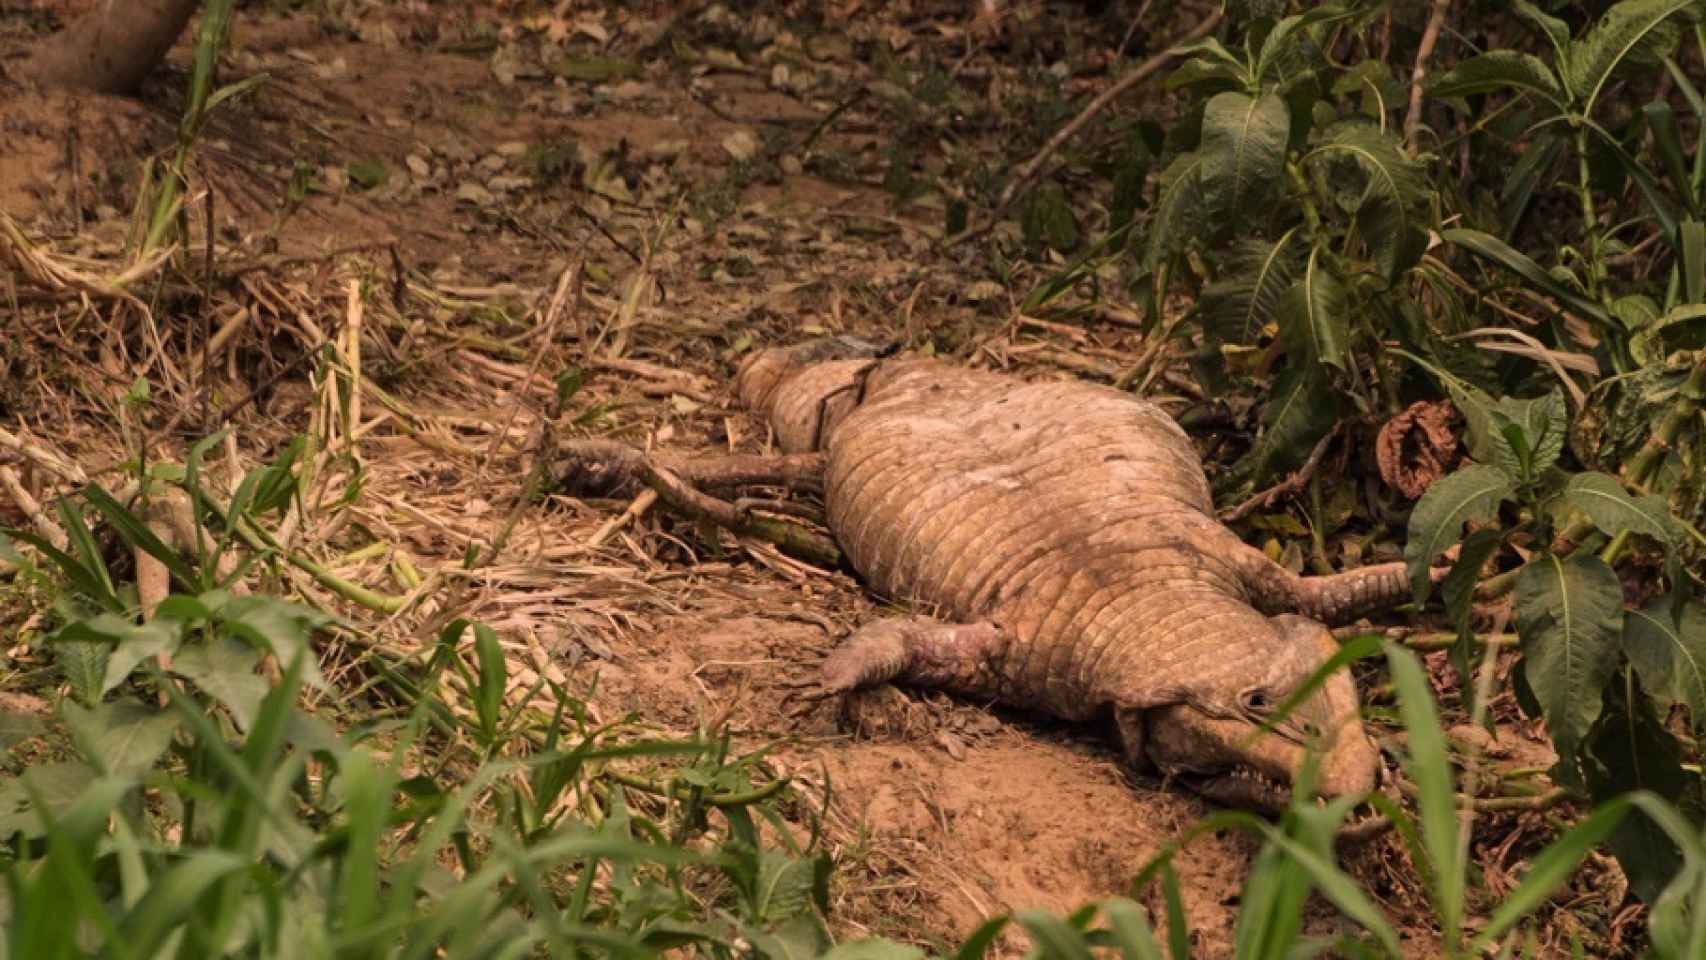 Fotografía de un cocodrilo muerto por los incendios forestales en el estado de Mato Grosso (Brasil).